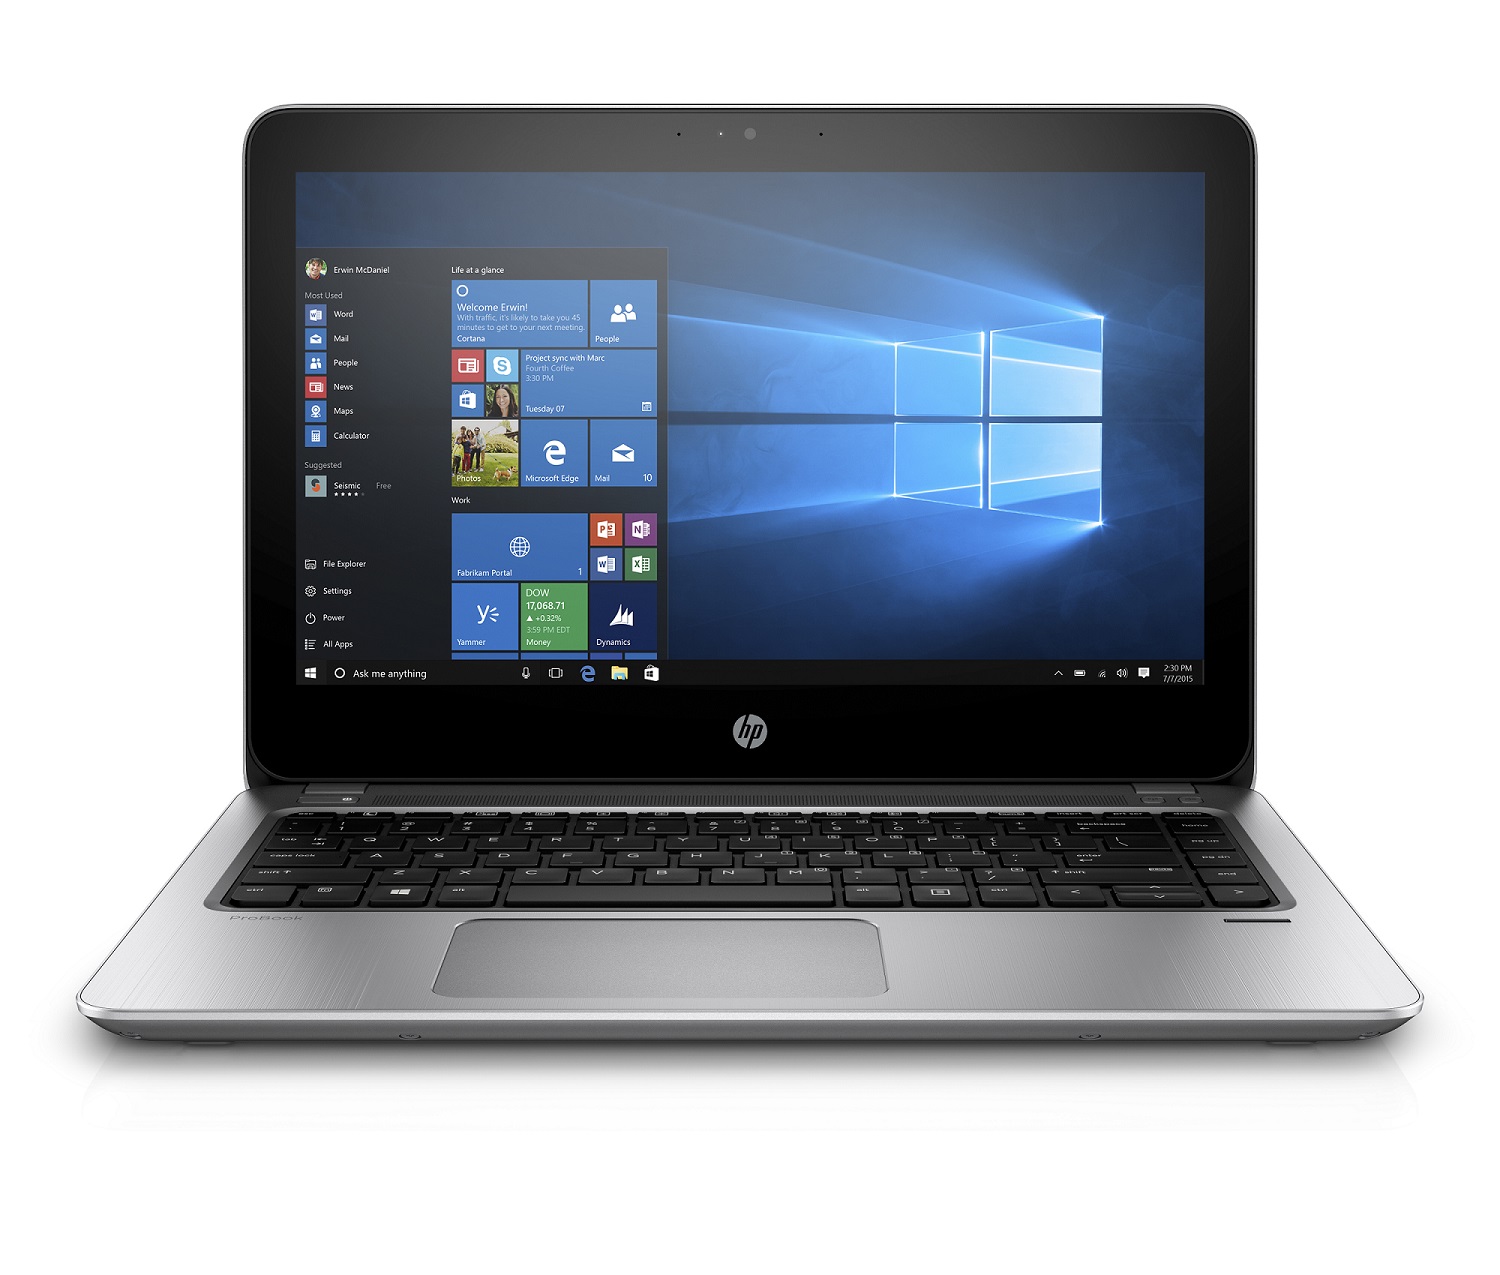 HP ProBook 430 G4 13.3" i3-7100U / 8GB / 128GB SSD / Win10